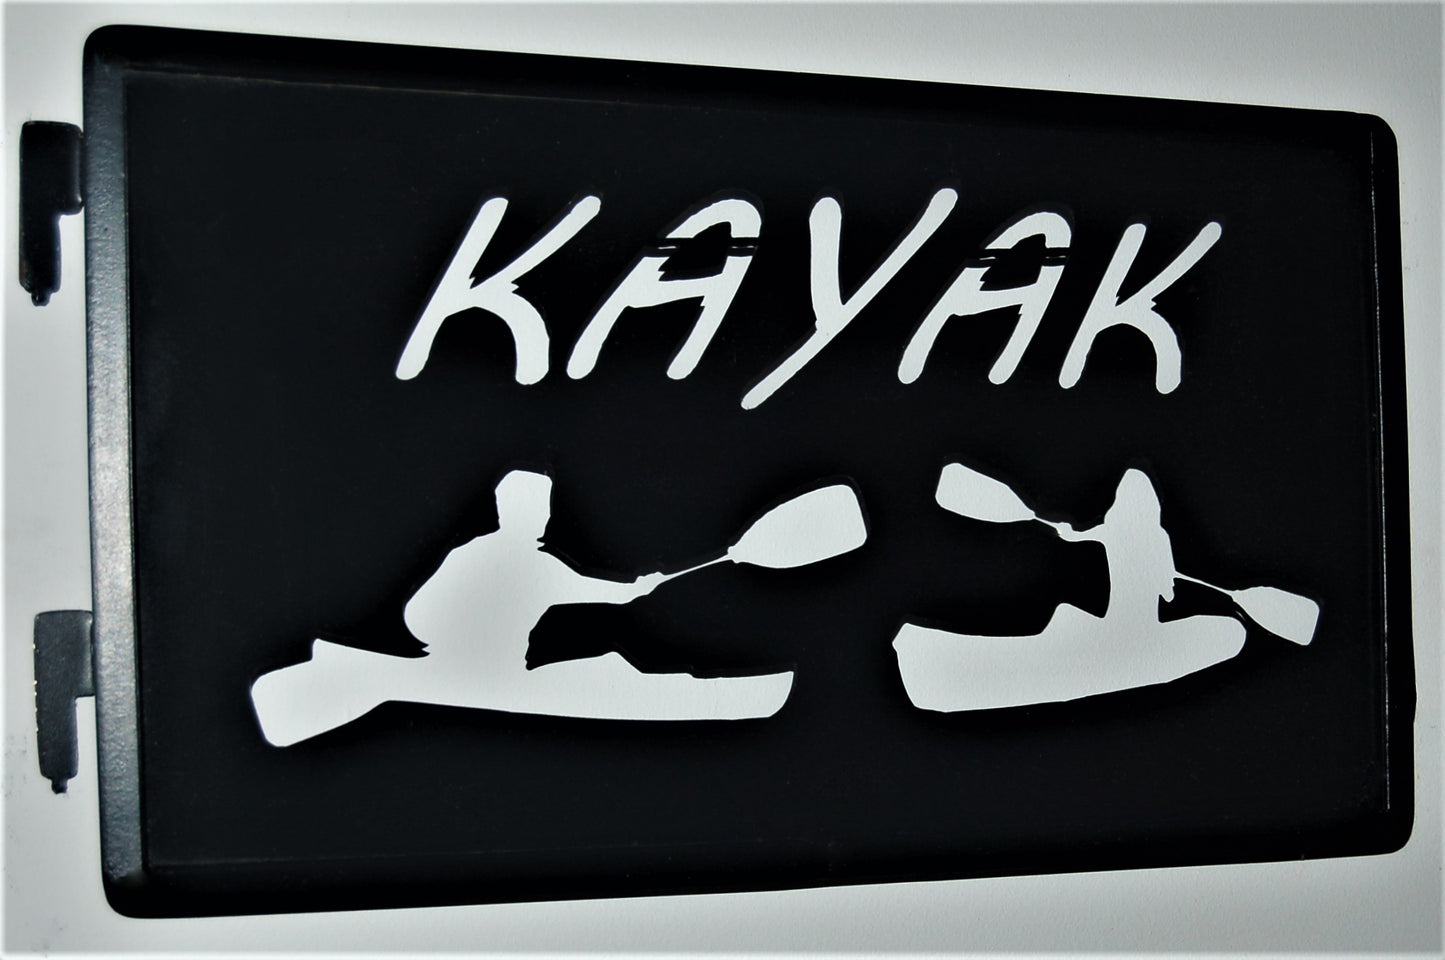 black metal Kayak inspiring panel with 2 kayaker inside of kayaks 